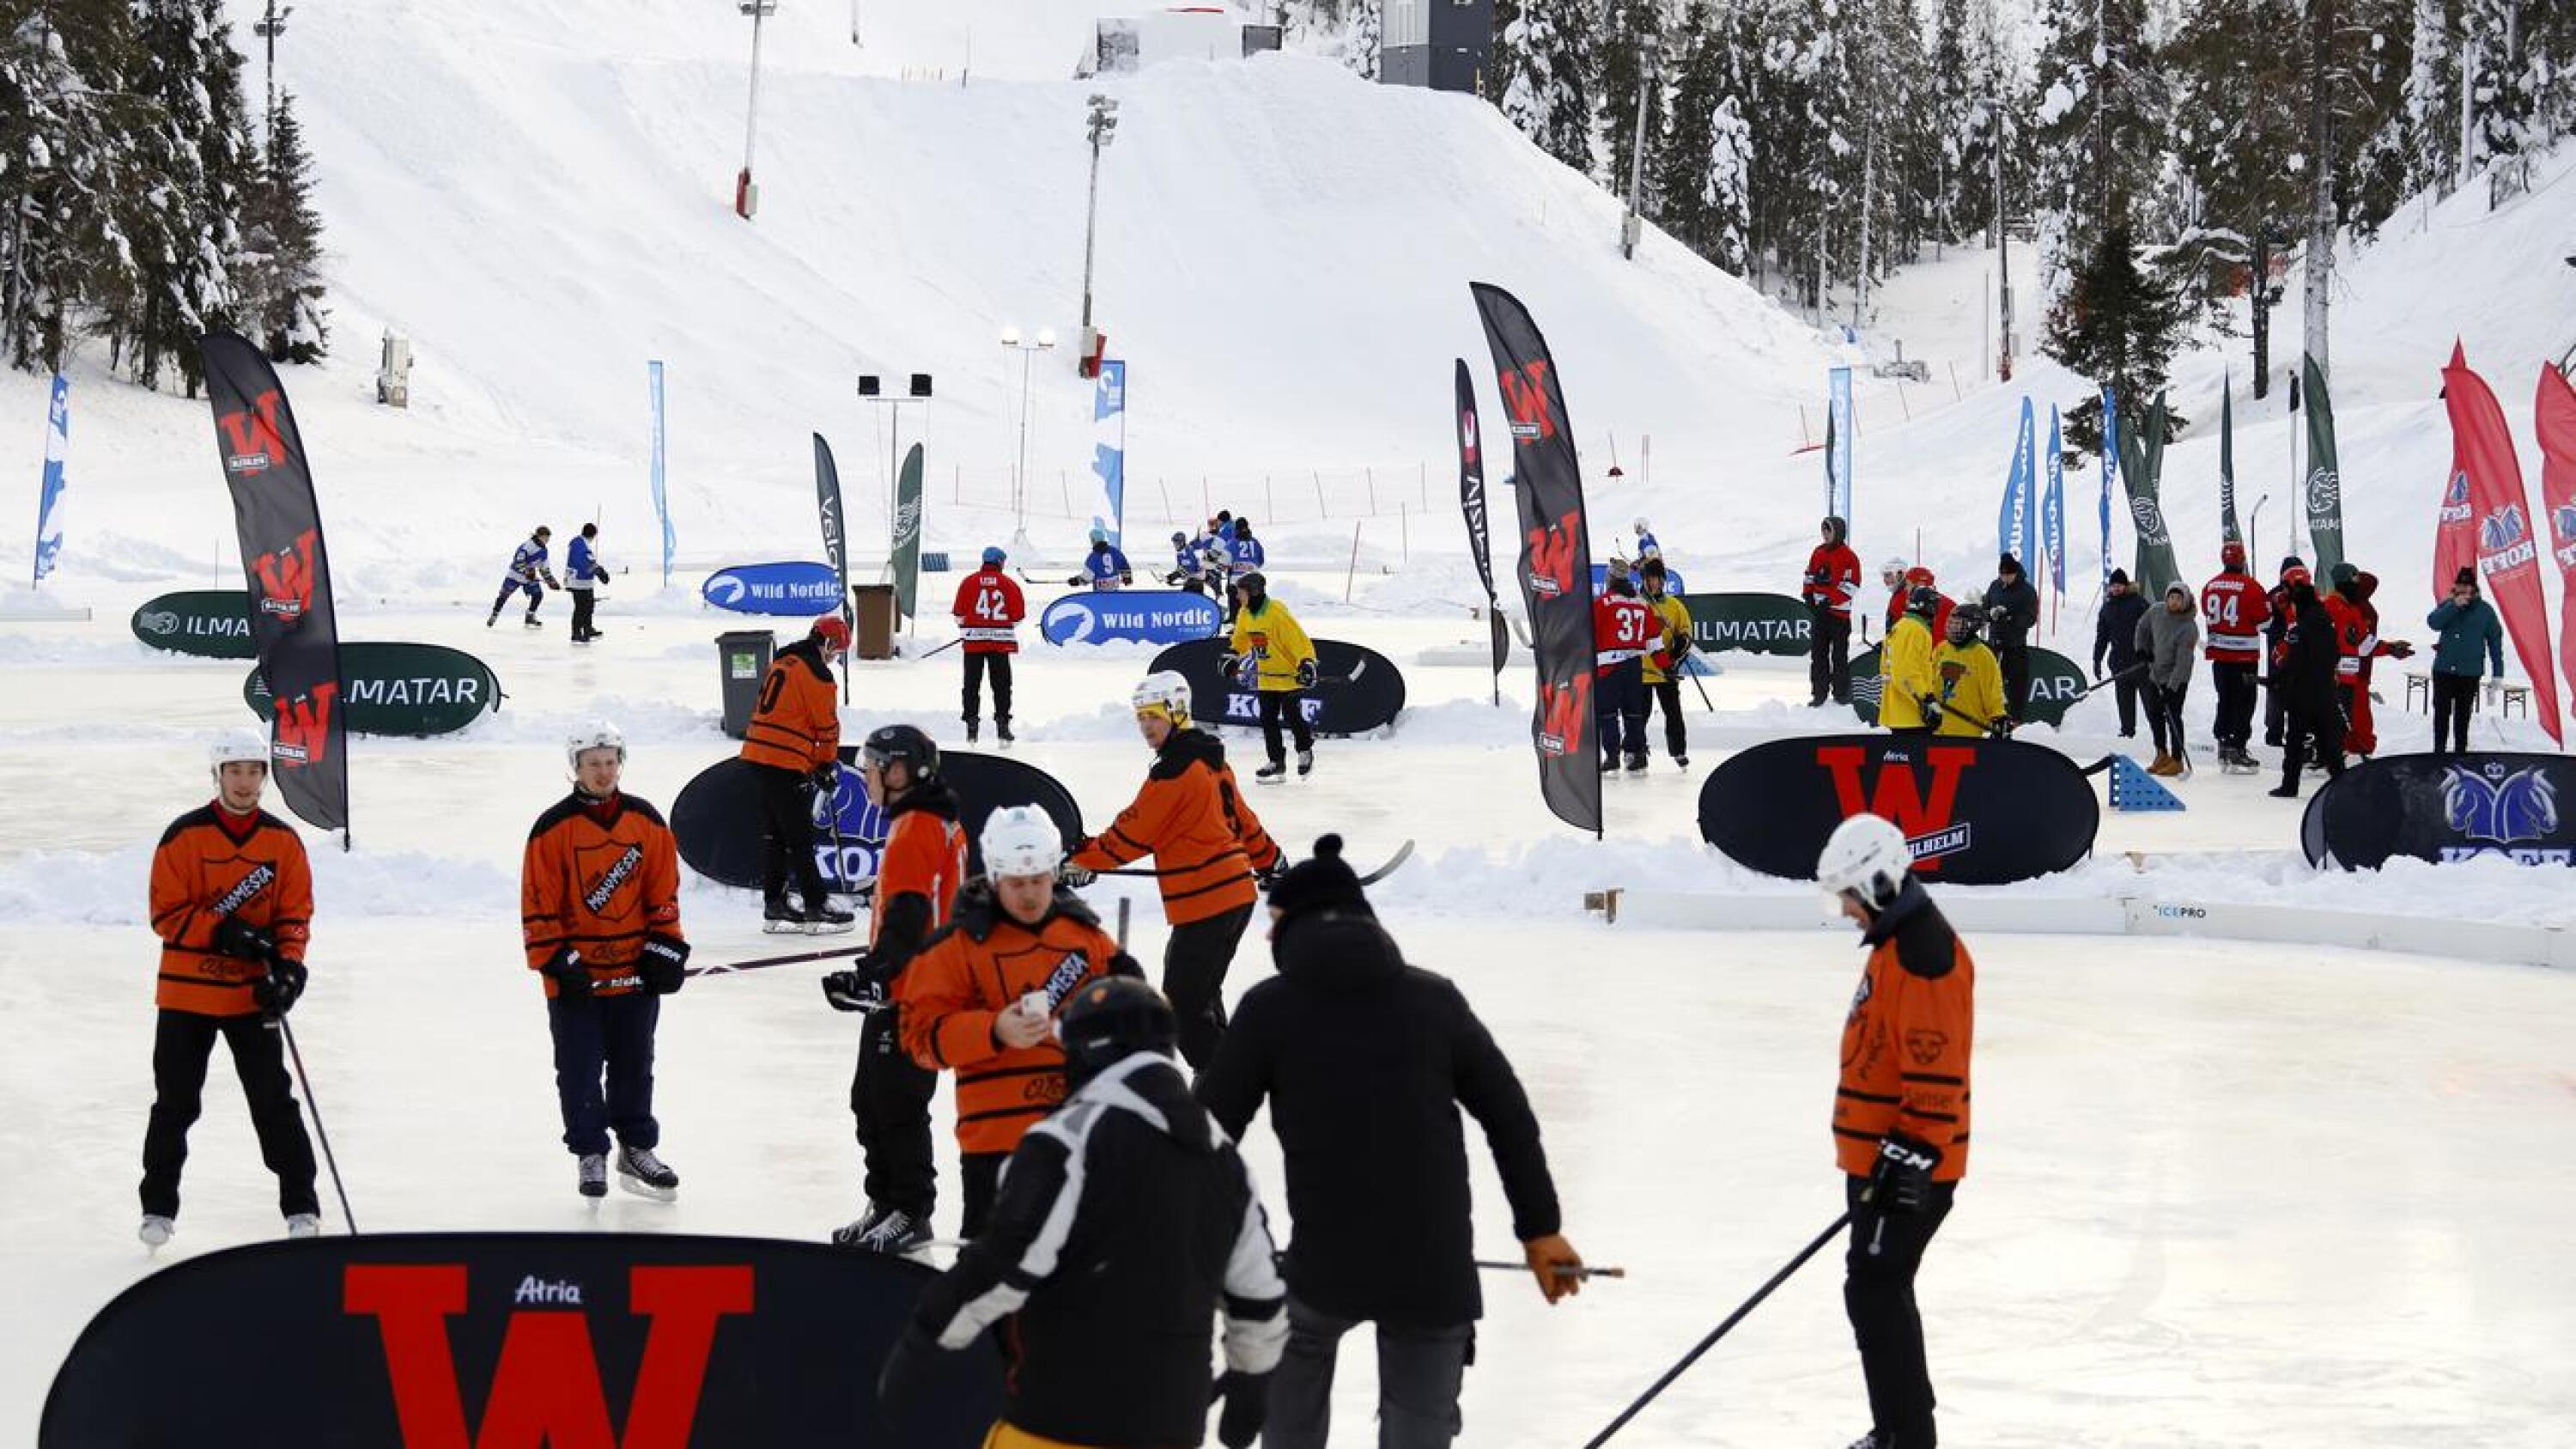 Pipolätkä Rukan pelit pelataan Kaltiolammen jäällä (kuvassa) ja hiihtostadionilla sijaitsevilla kentillä.